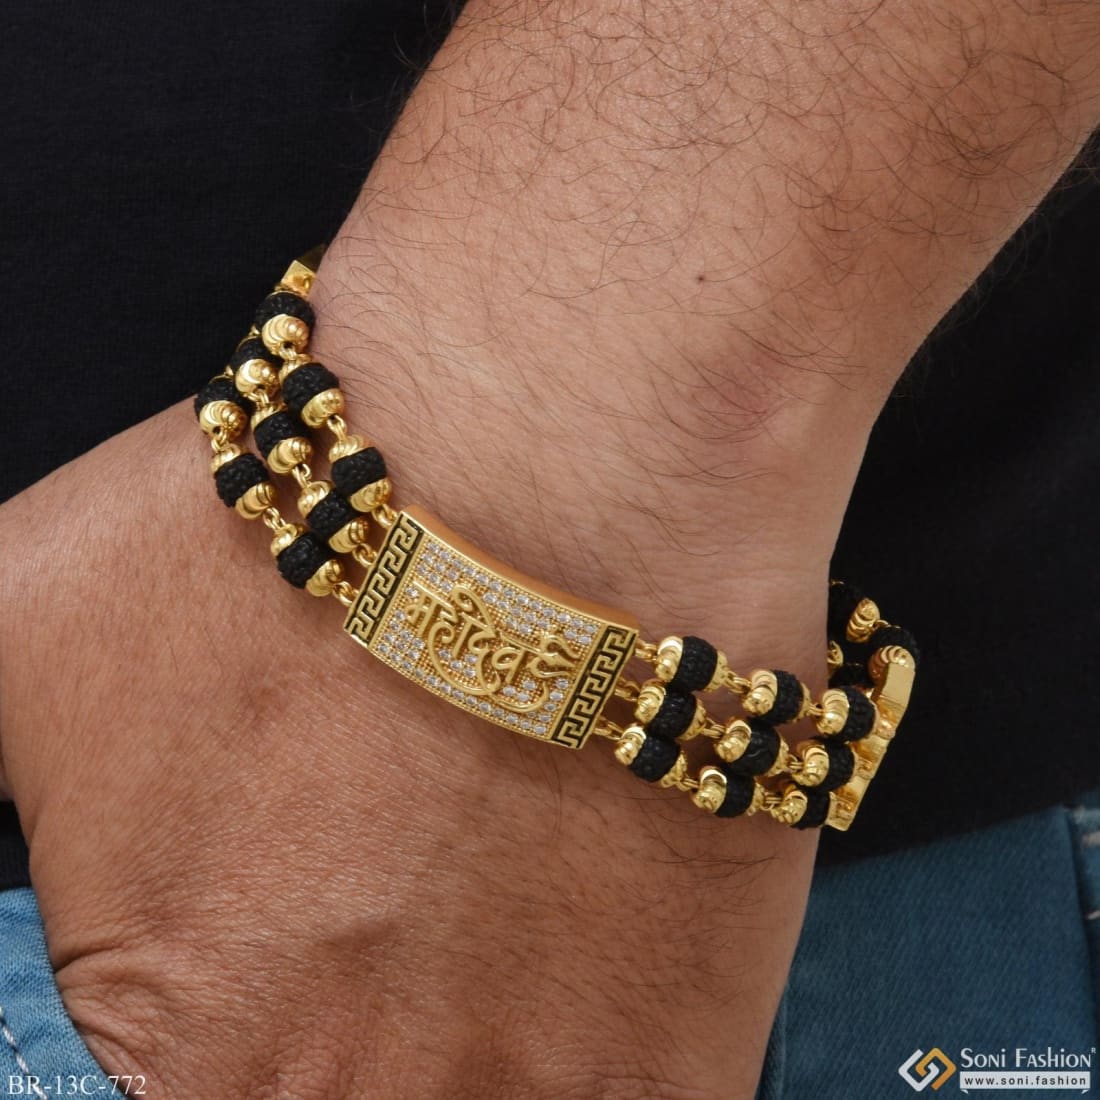 Buy quality 916 Gold Gent's Rudraksh Bracelet in Ahmedabad